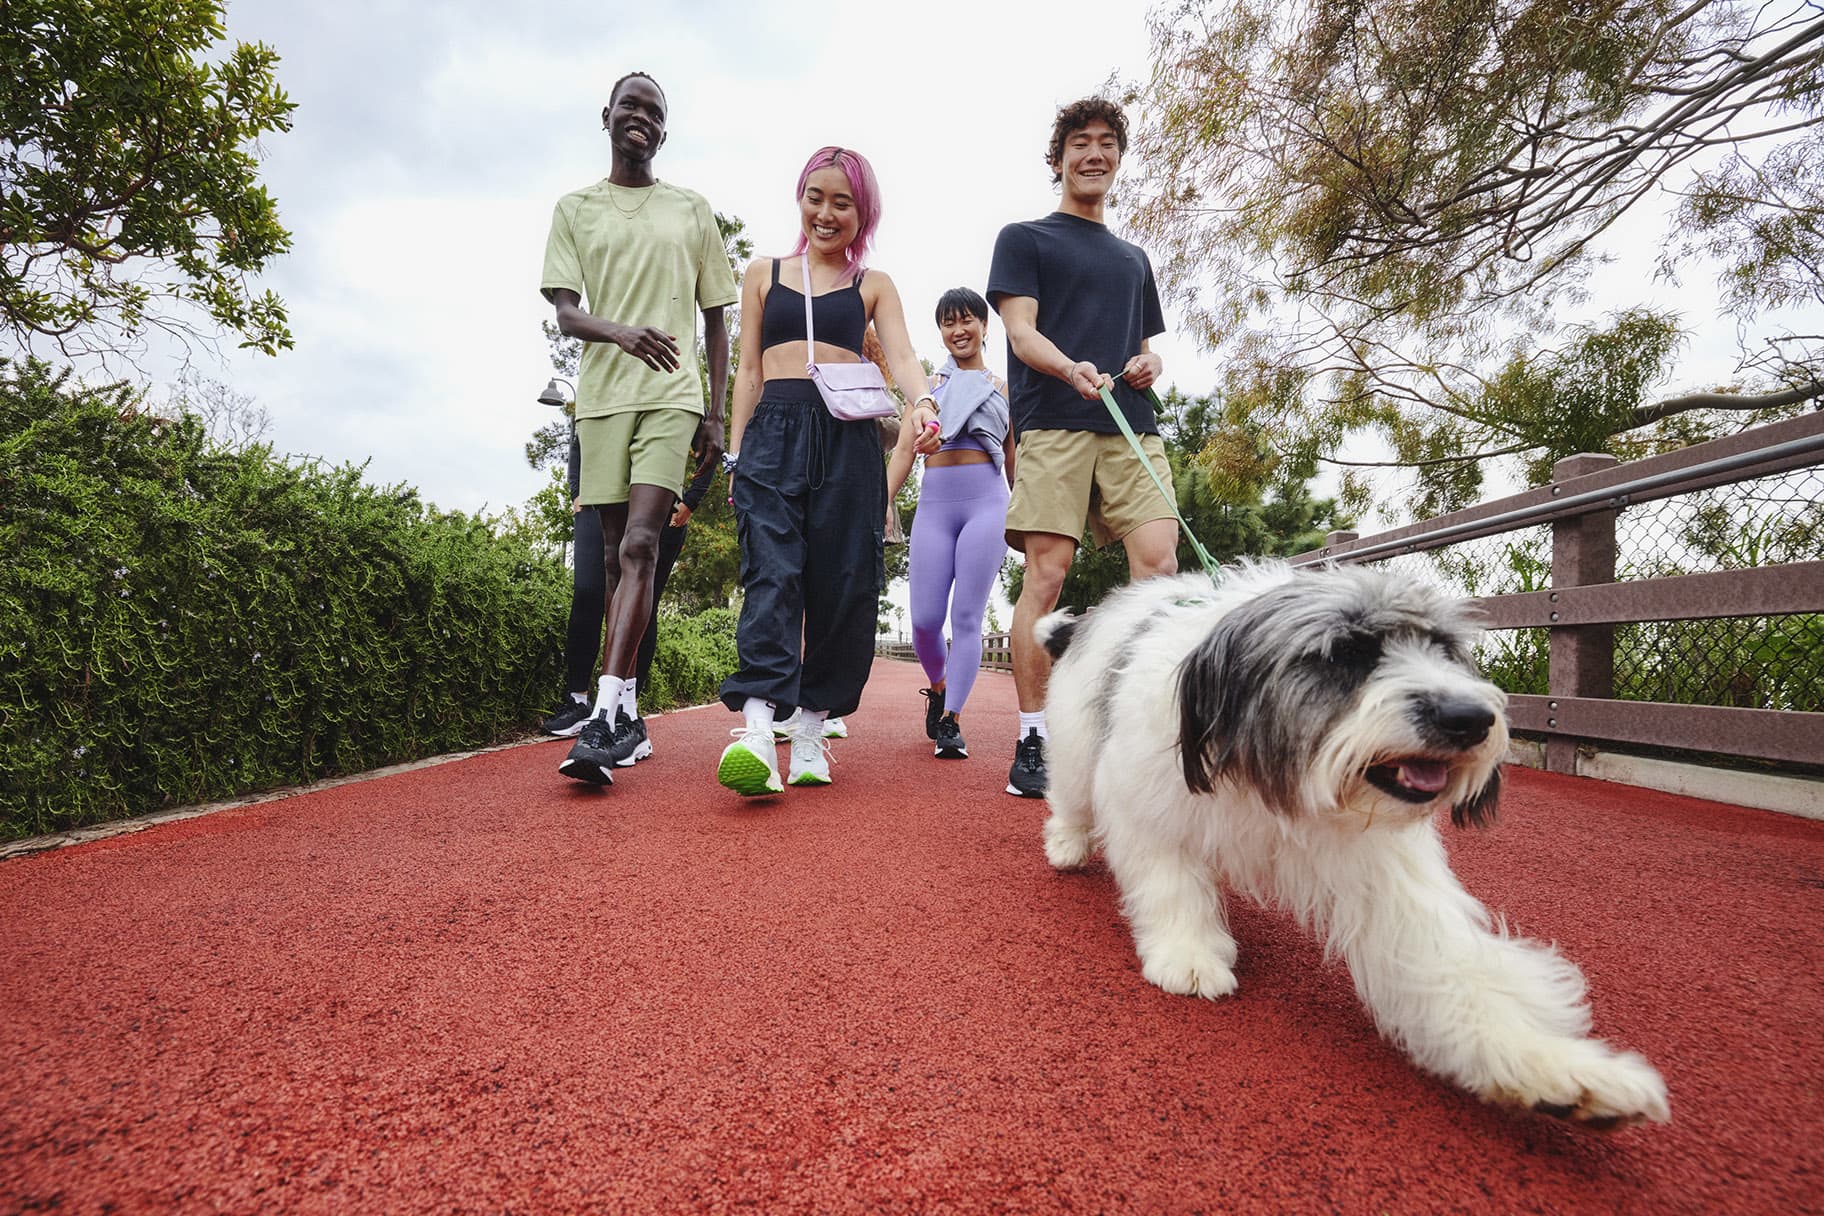 Vijf verrassende voordelen van dagelijks wandelen, volgens experts